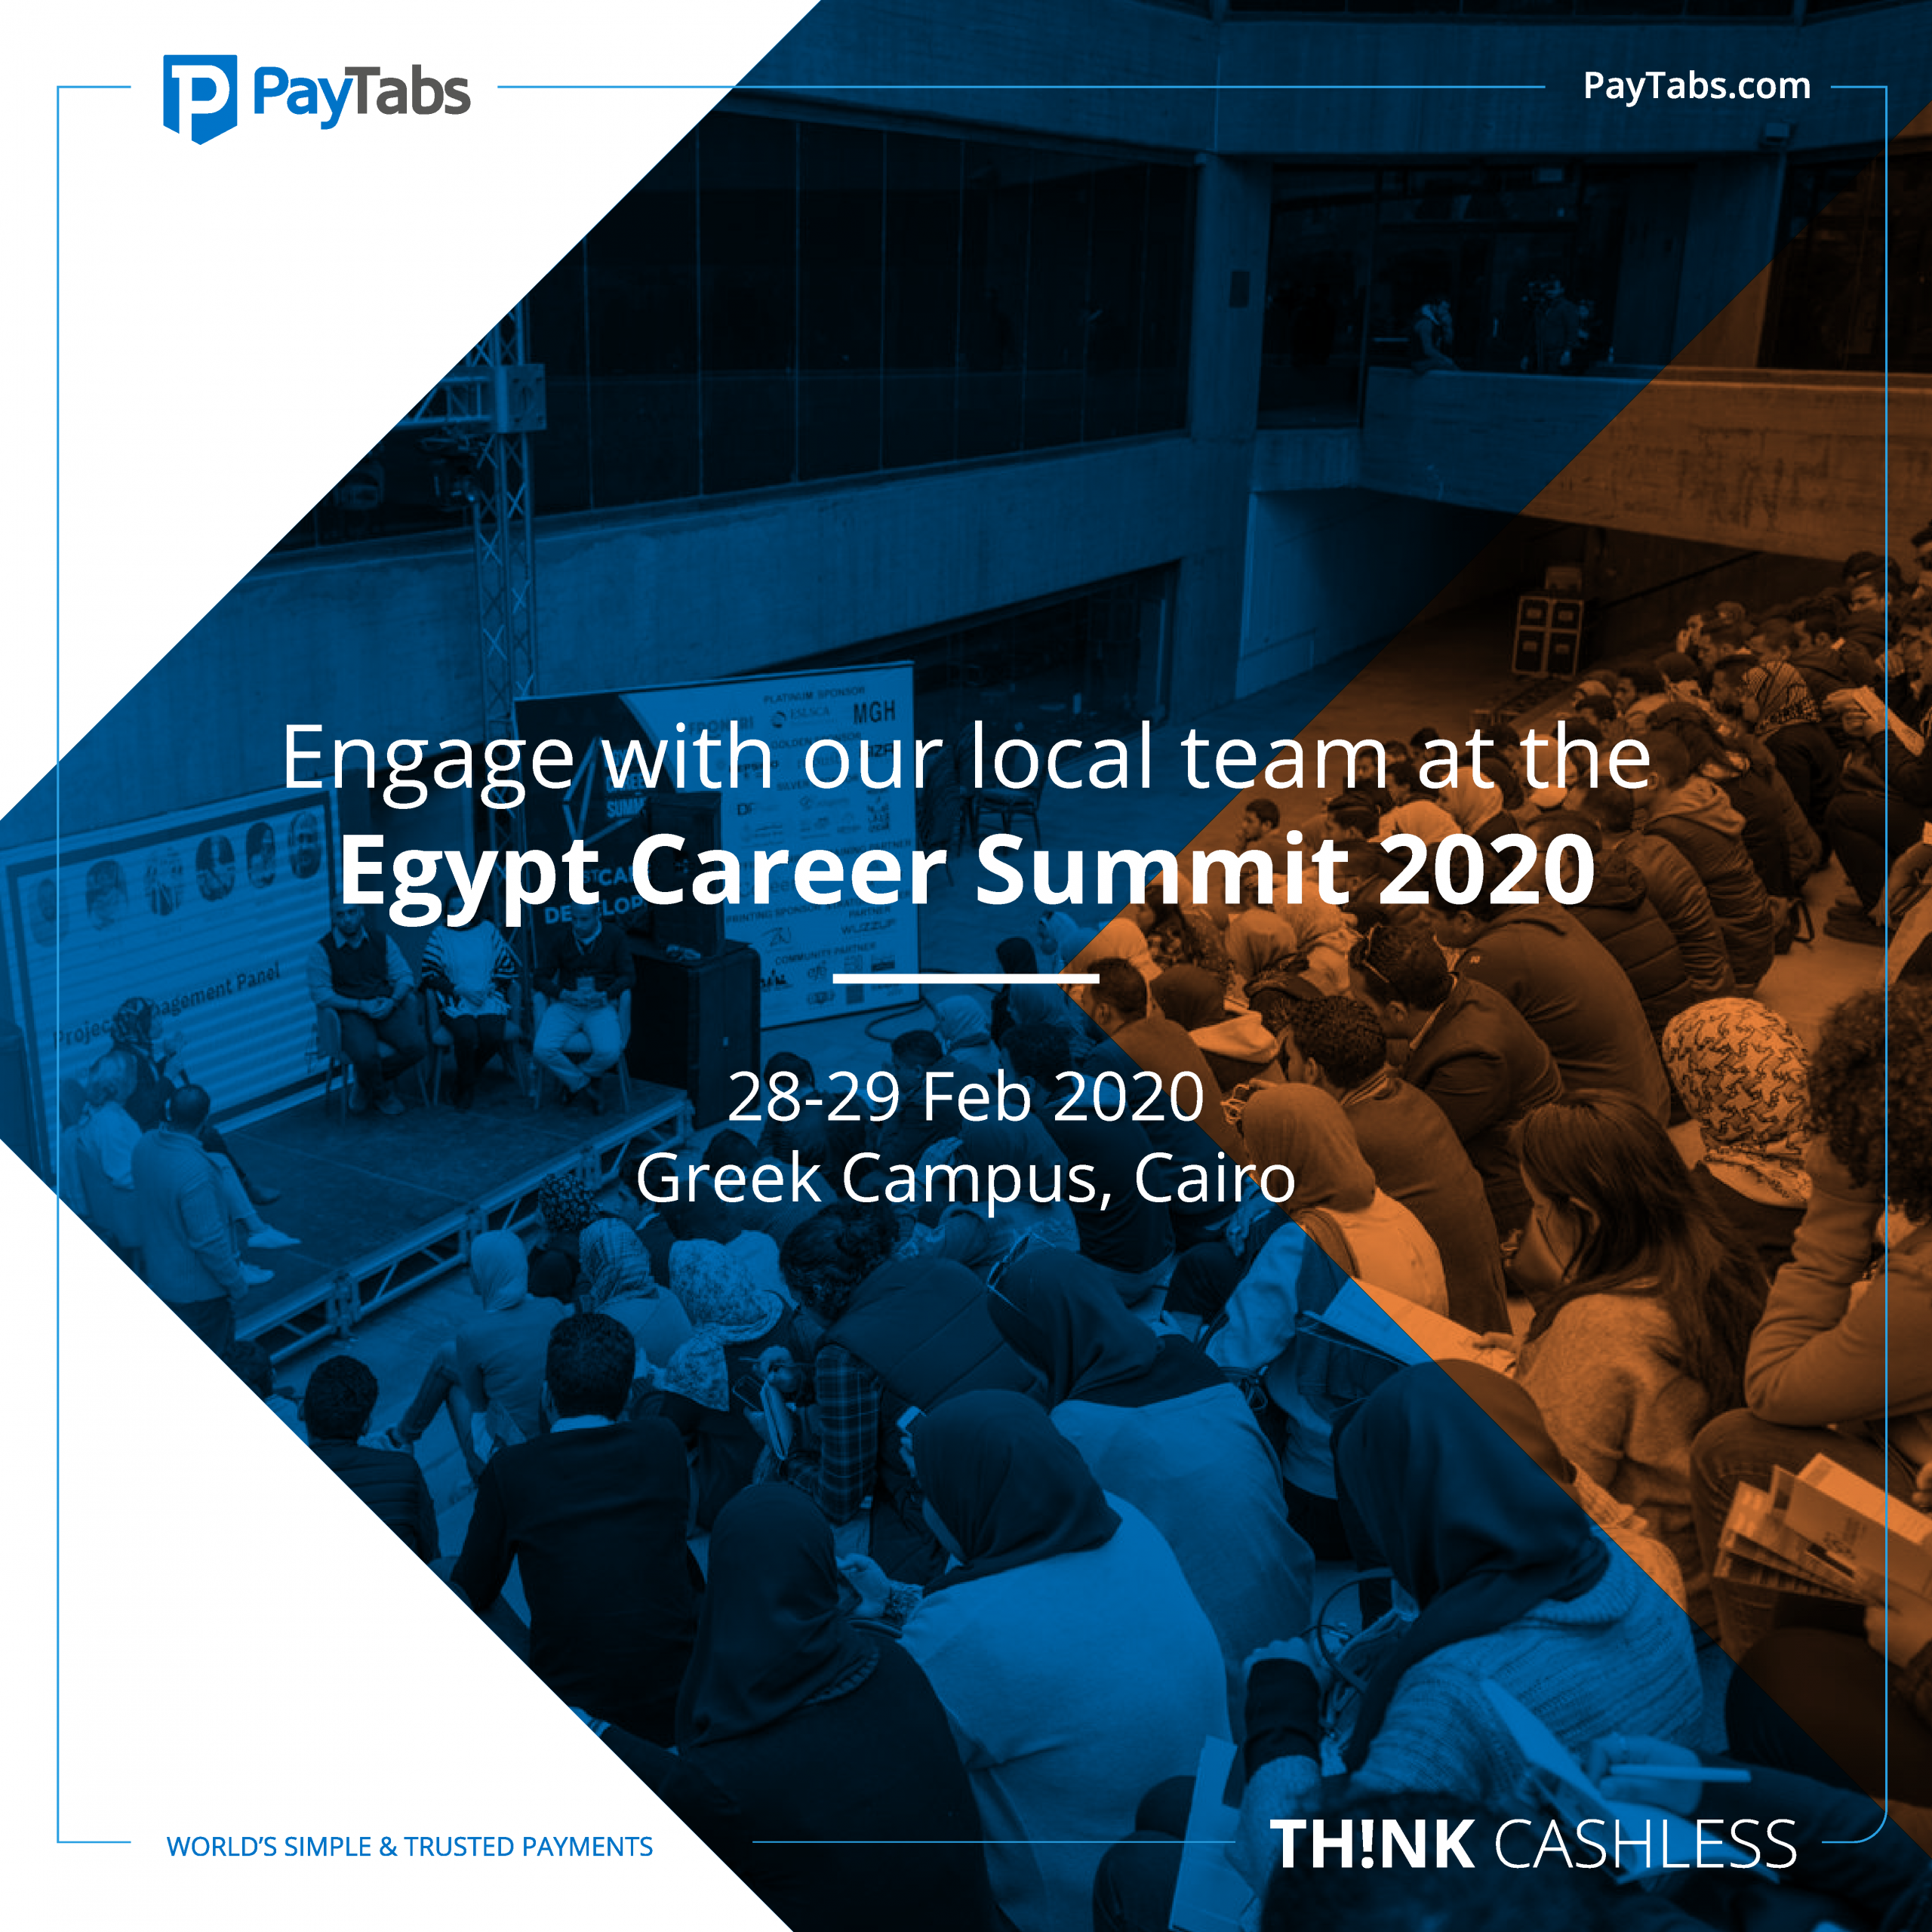 Egypt Career Summit 2020